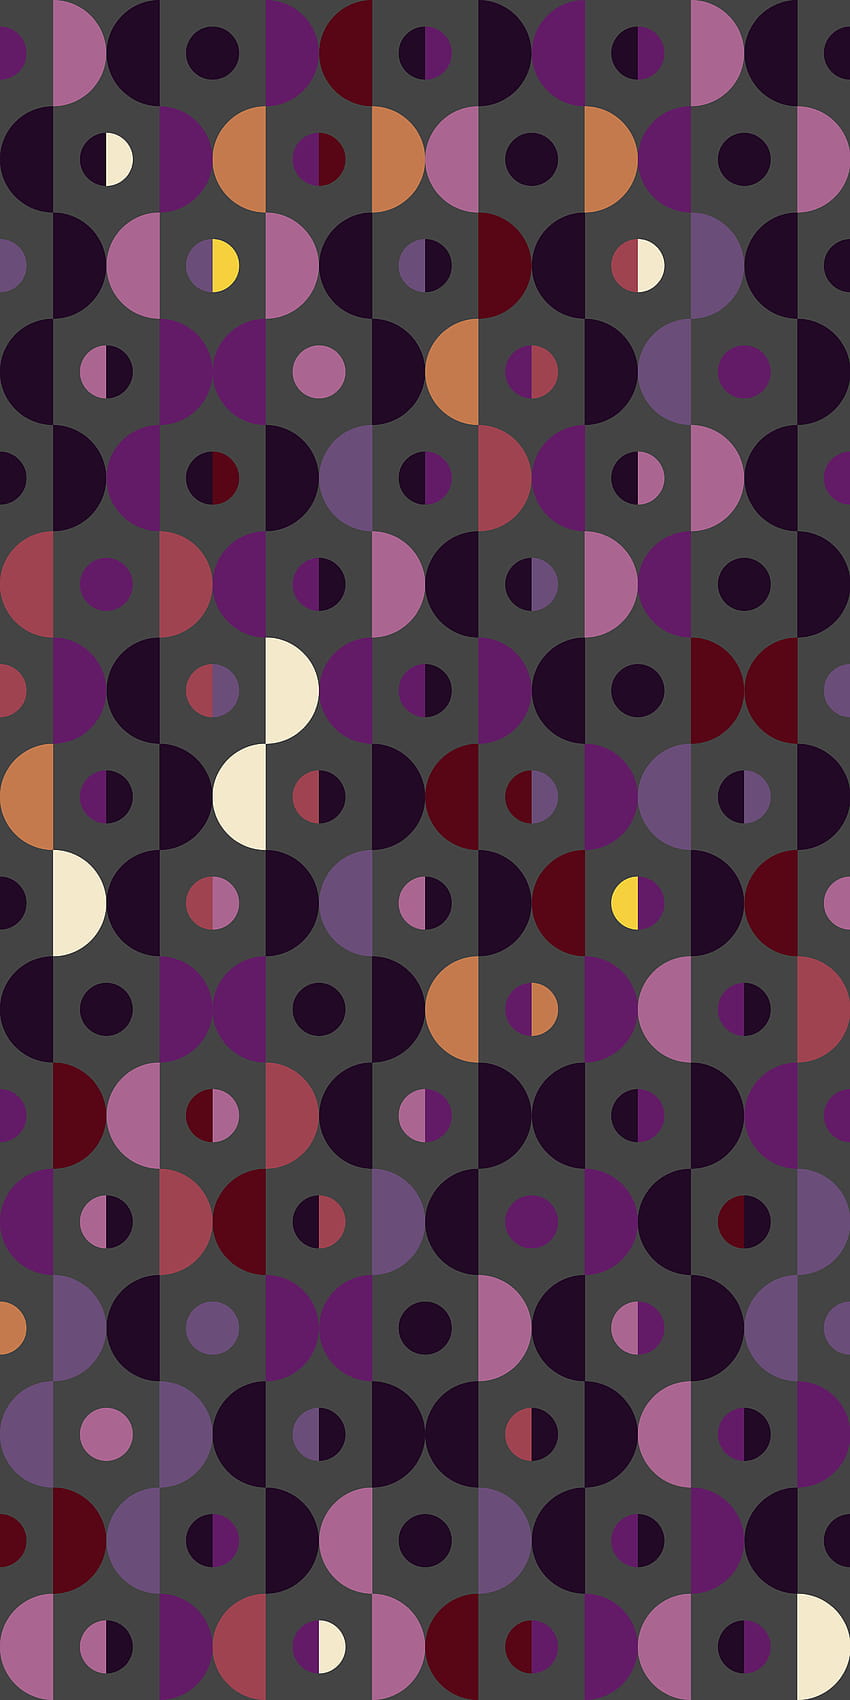 Russfussuk patrón de repetición geométrica circular en gris C3B …, patrón geométrico de círculos coloridos fondo de pantalla del teléfono